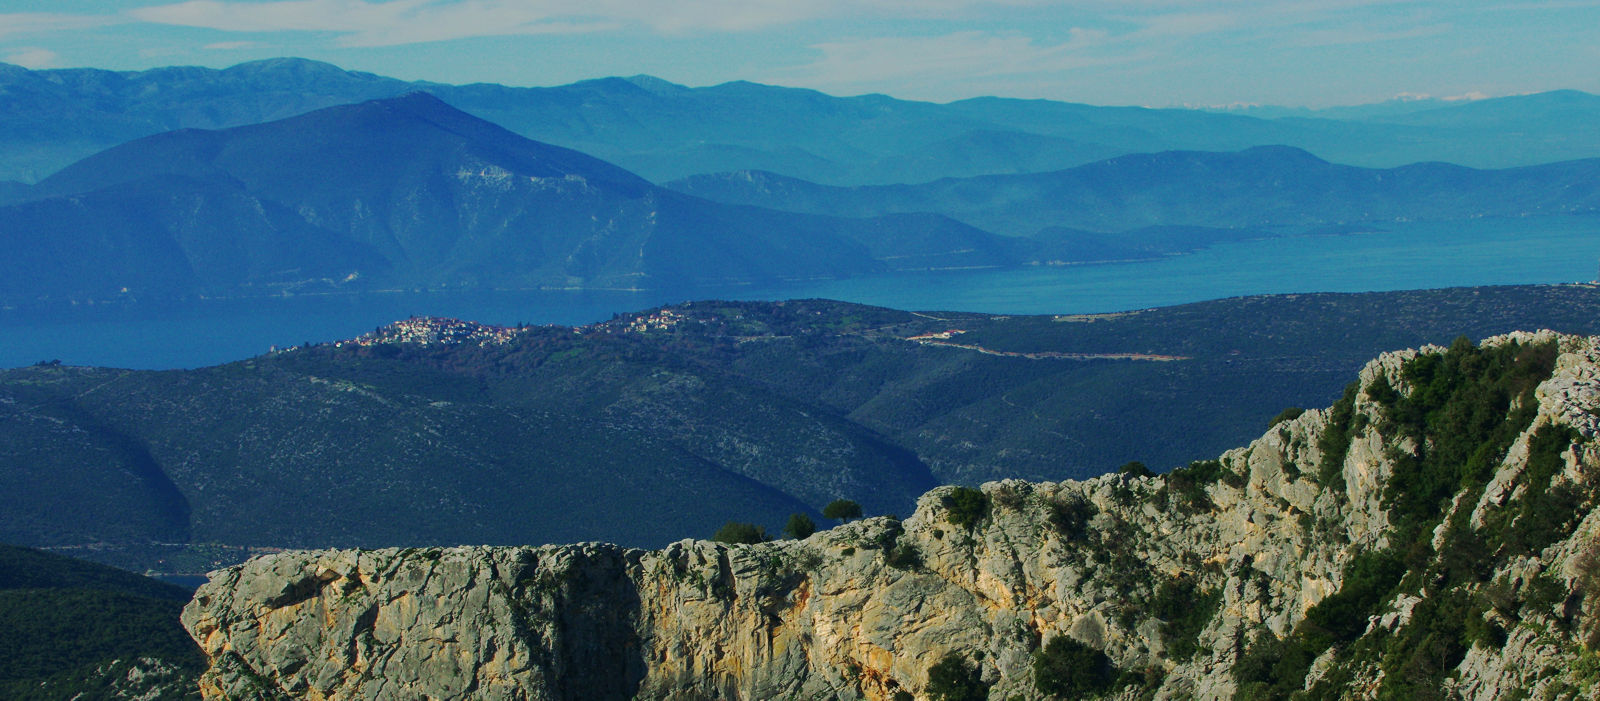 Νότιο Πήλιο topoguide: Το χωριό Τρίκερι και τα βουνά της Στερεάς Ελλάδας από την κορυφή του Τισαίου όρους